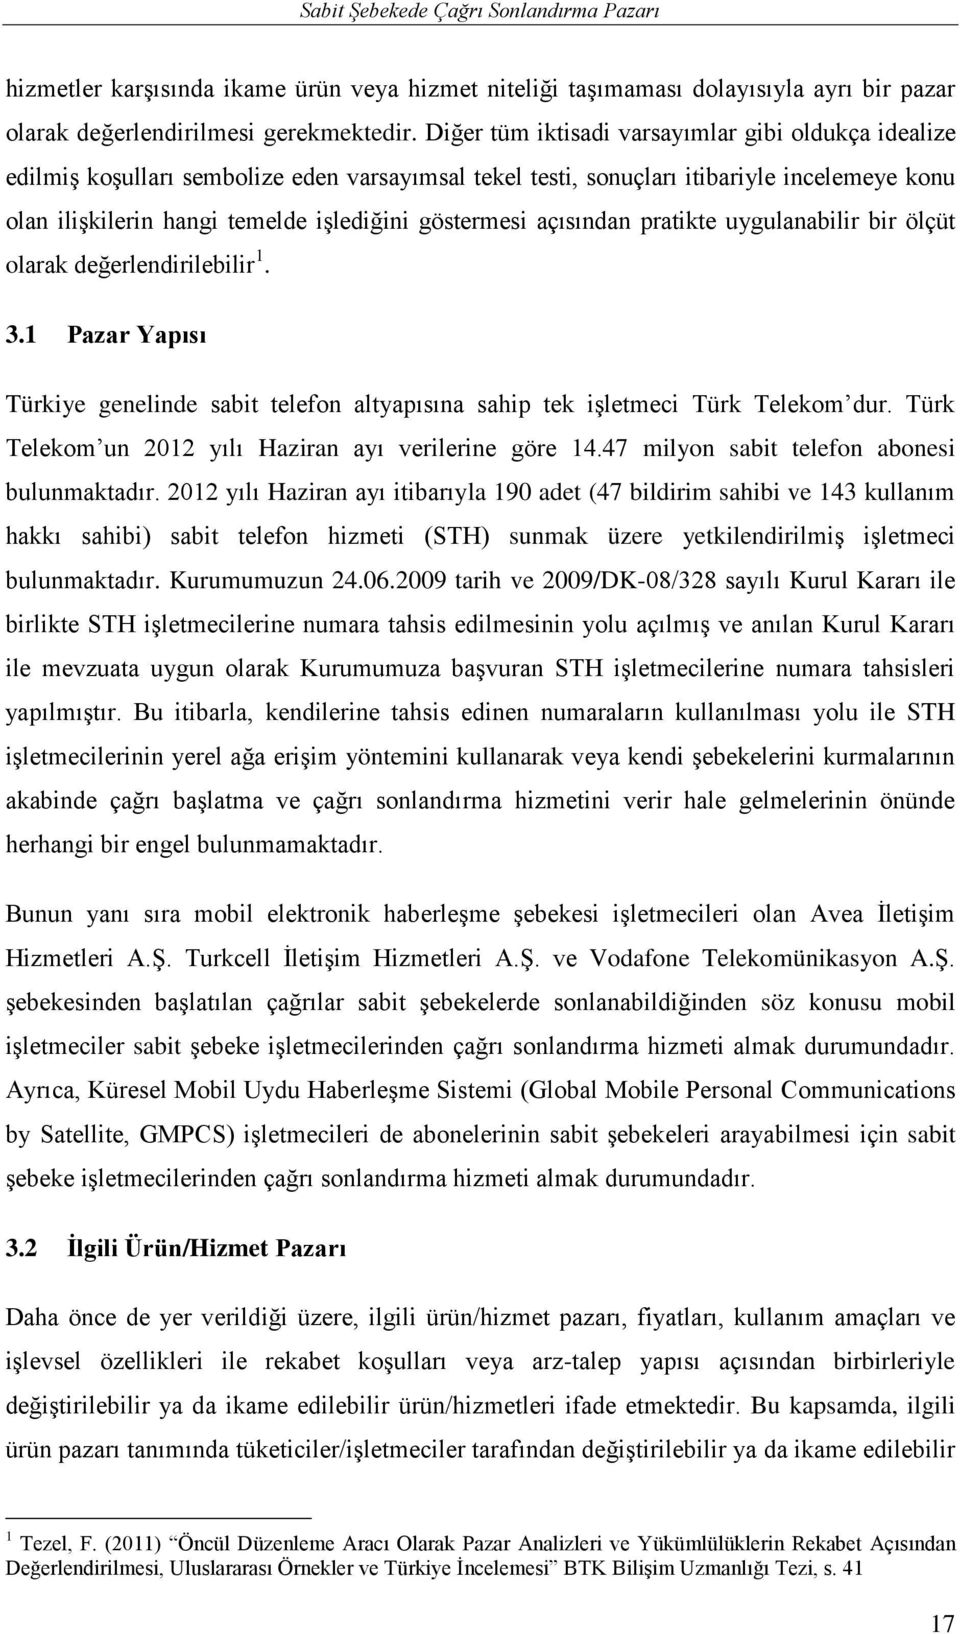 göstermesi açısından pratikte uygulanabilir bir ölçüt olarak değerlendirilebilir 1. 3.1 Pazar Yapısı Türkiye genelinde sabit telefon altyapısına sahip tek işletmeci Türk Telekom dur.